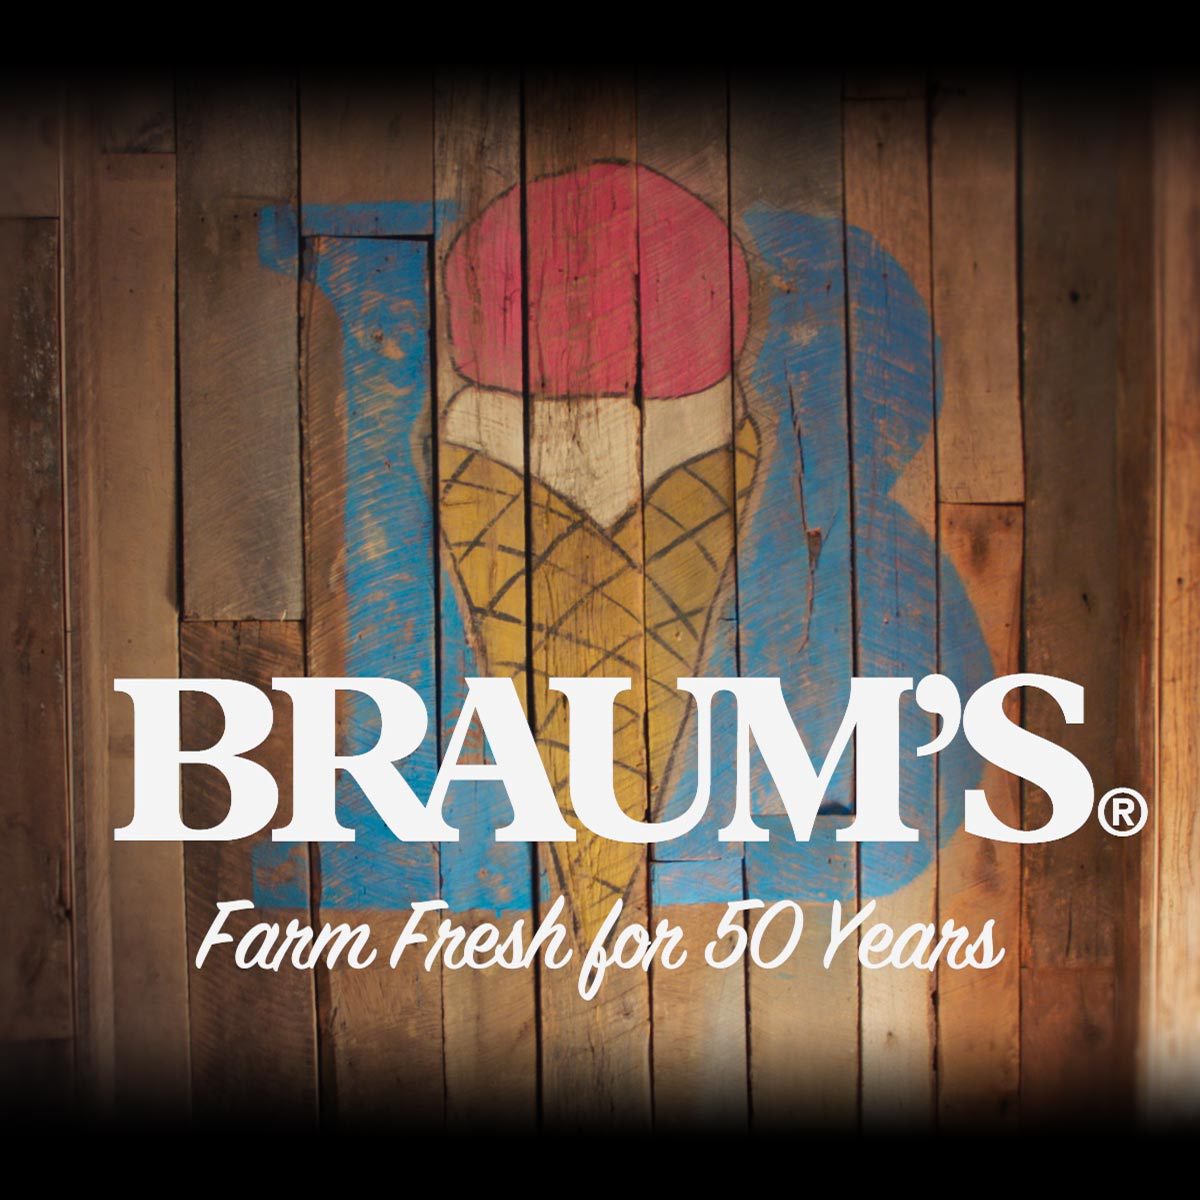 braums.com